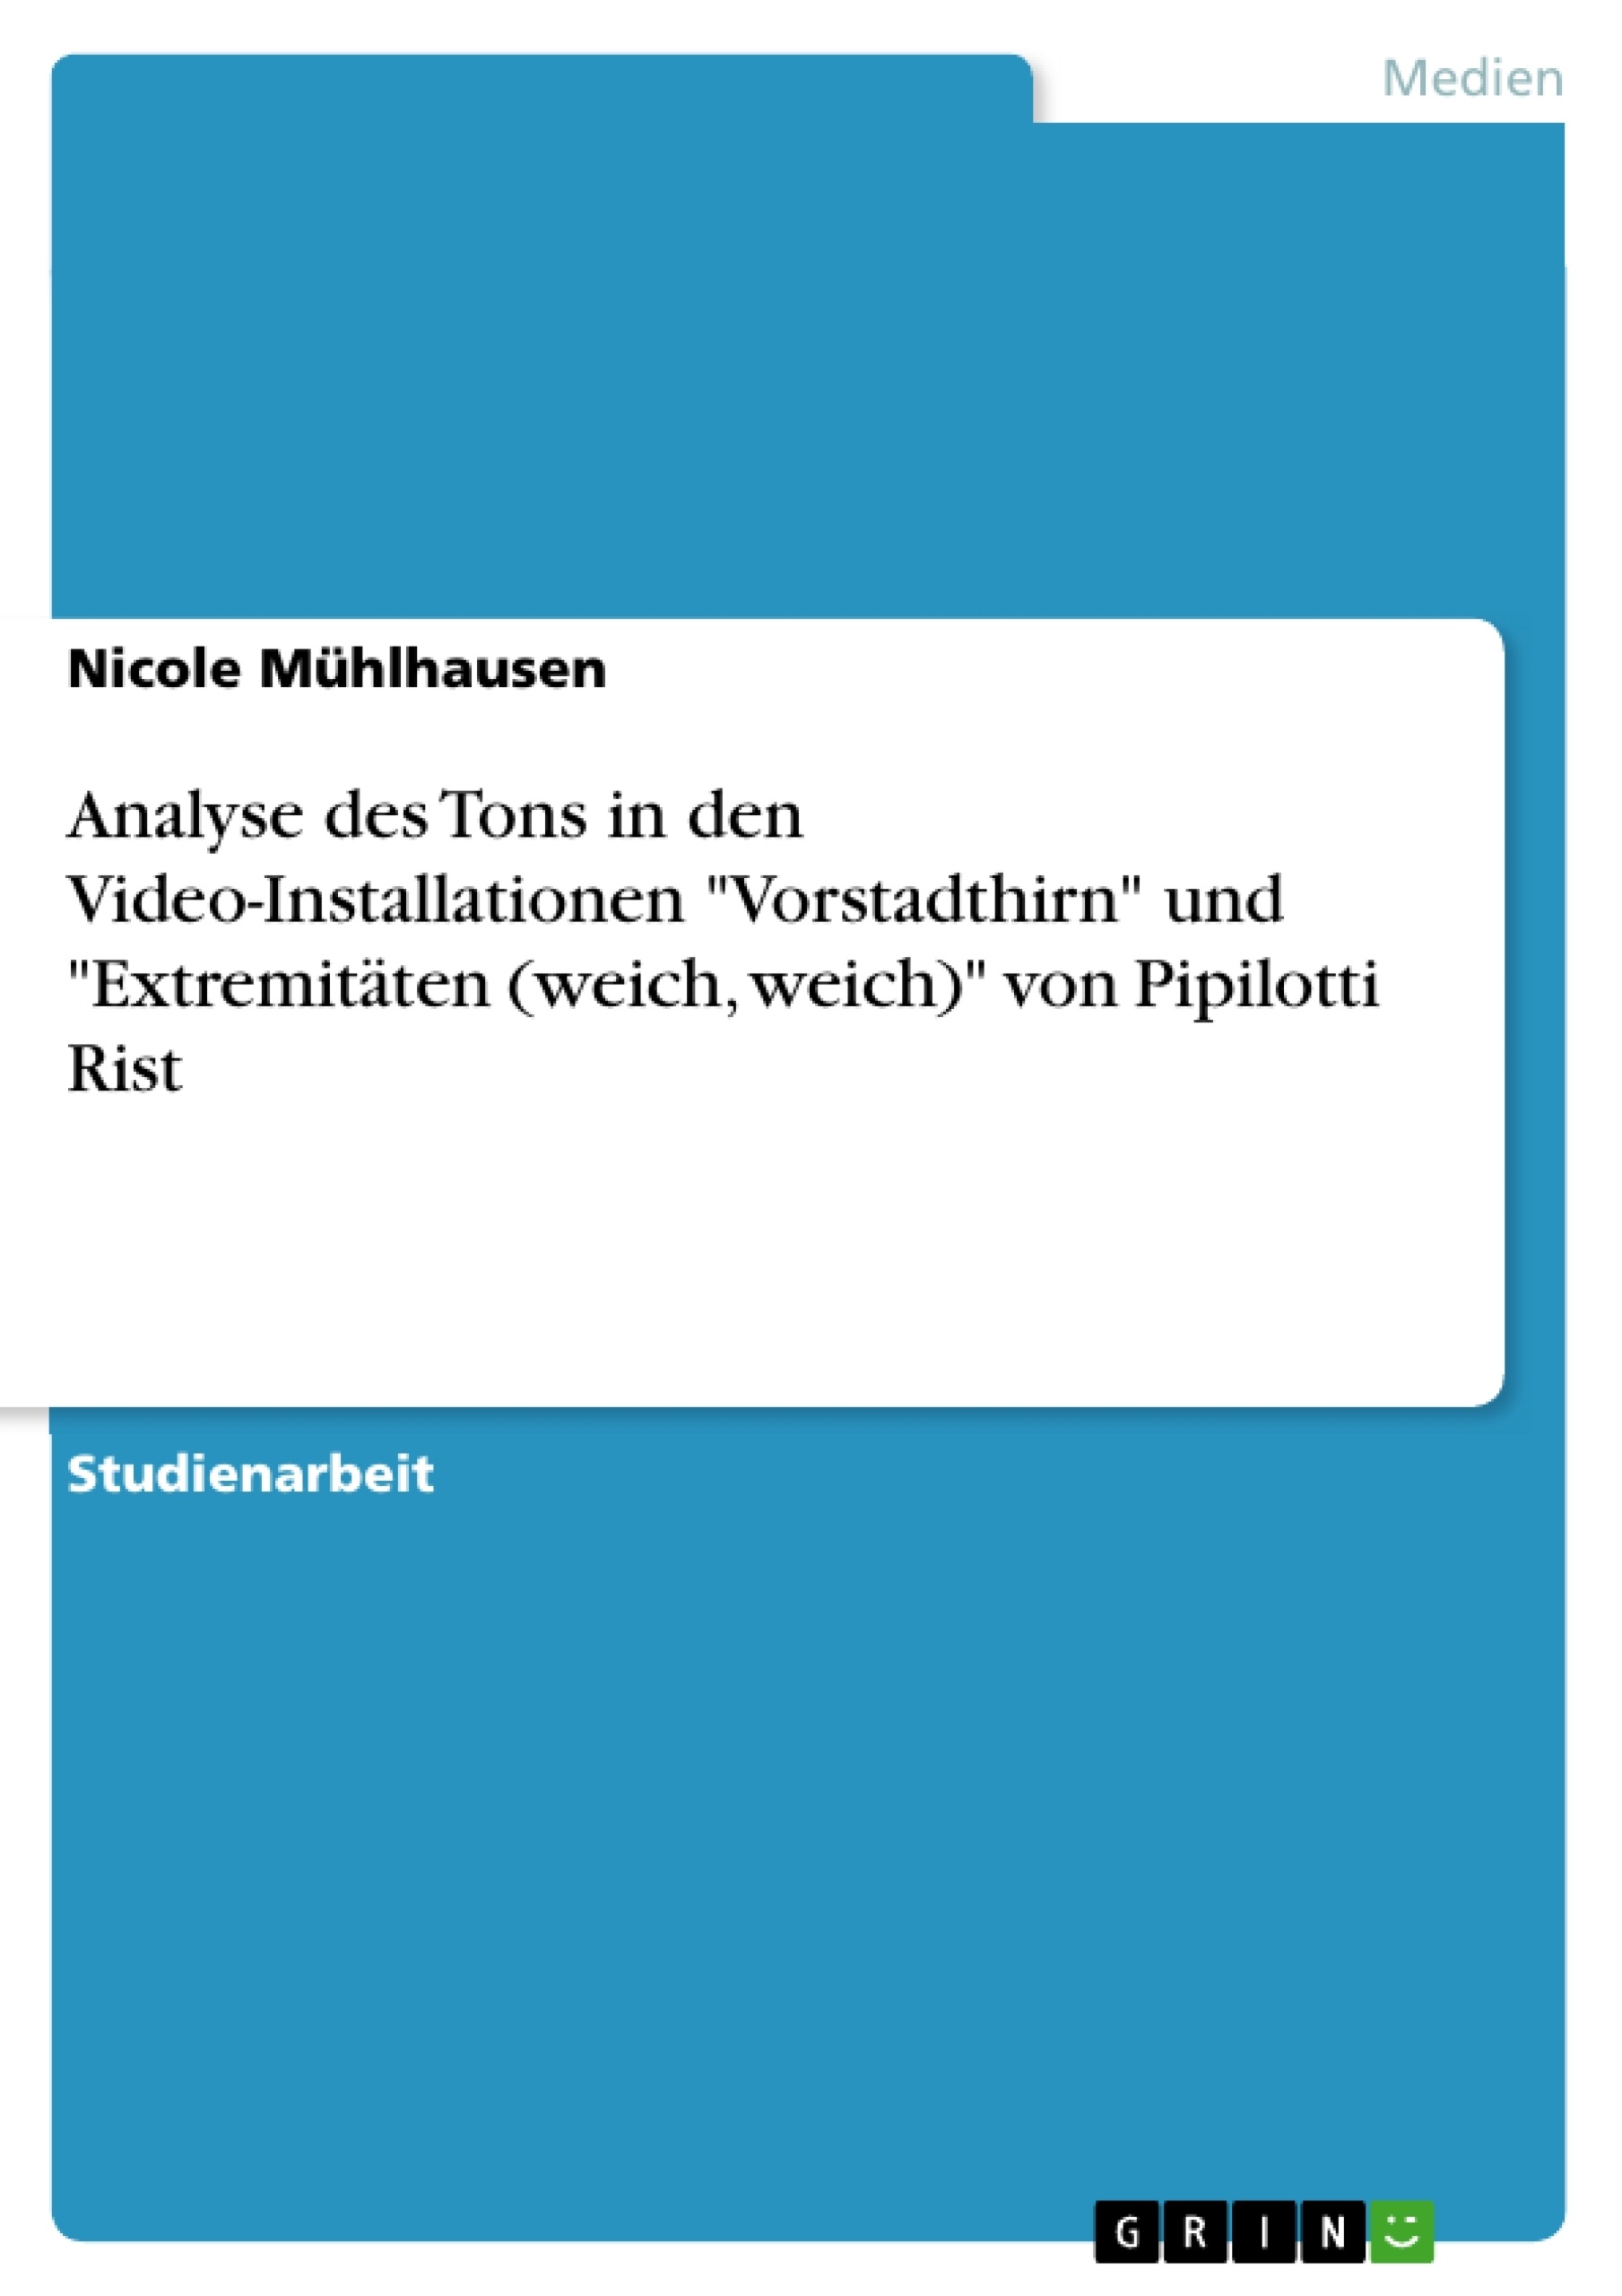 Titel: Analyse des Tons in den Video-Installationen "Vorstadthirn" und "Extremitäten (weich, weich)" von Pipilotti Rist